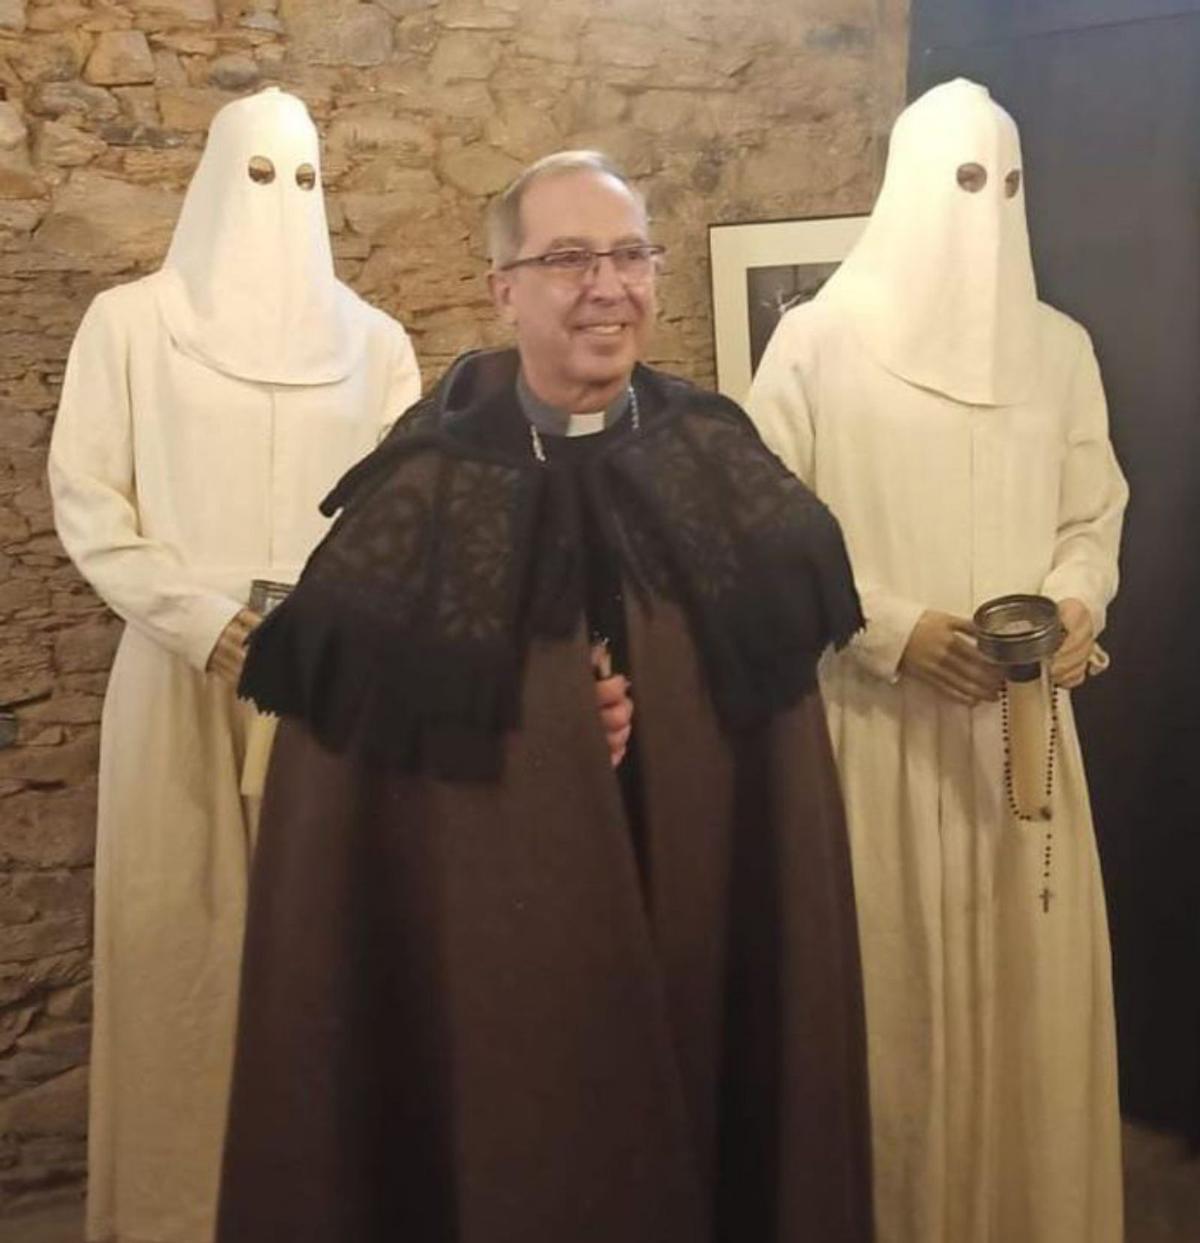 El obispo de Zamora viste la capa alistana. | Ch. S.